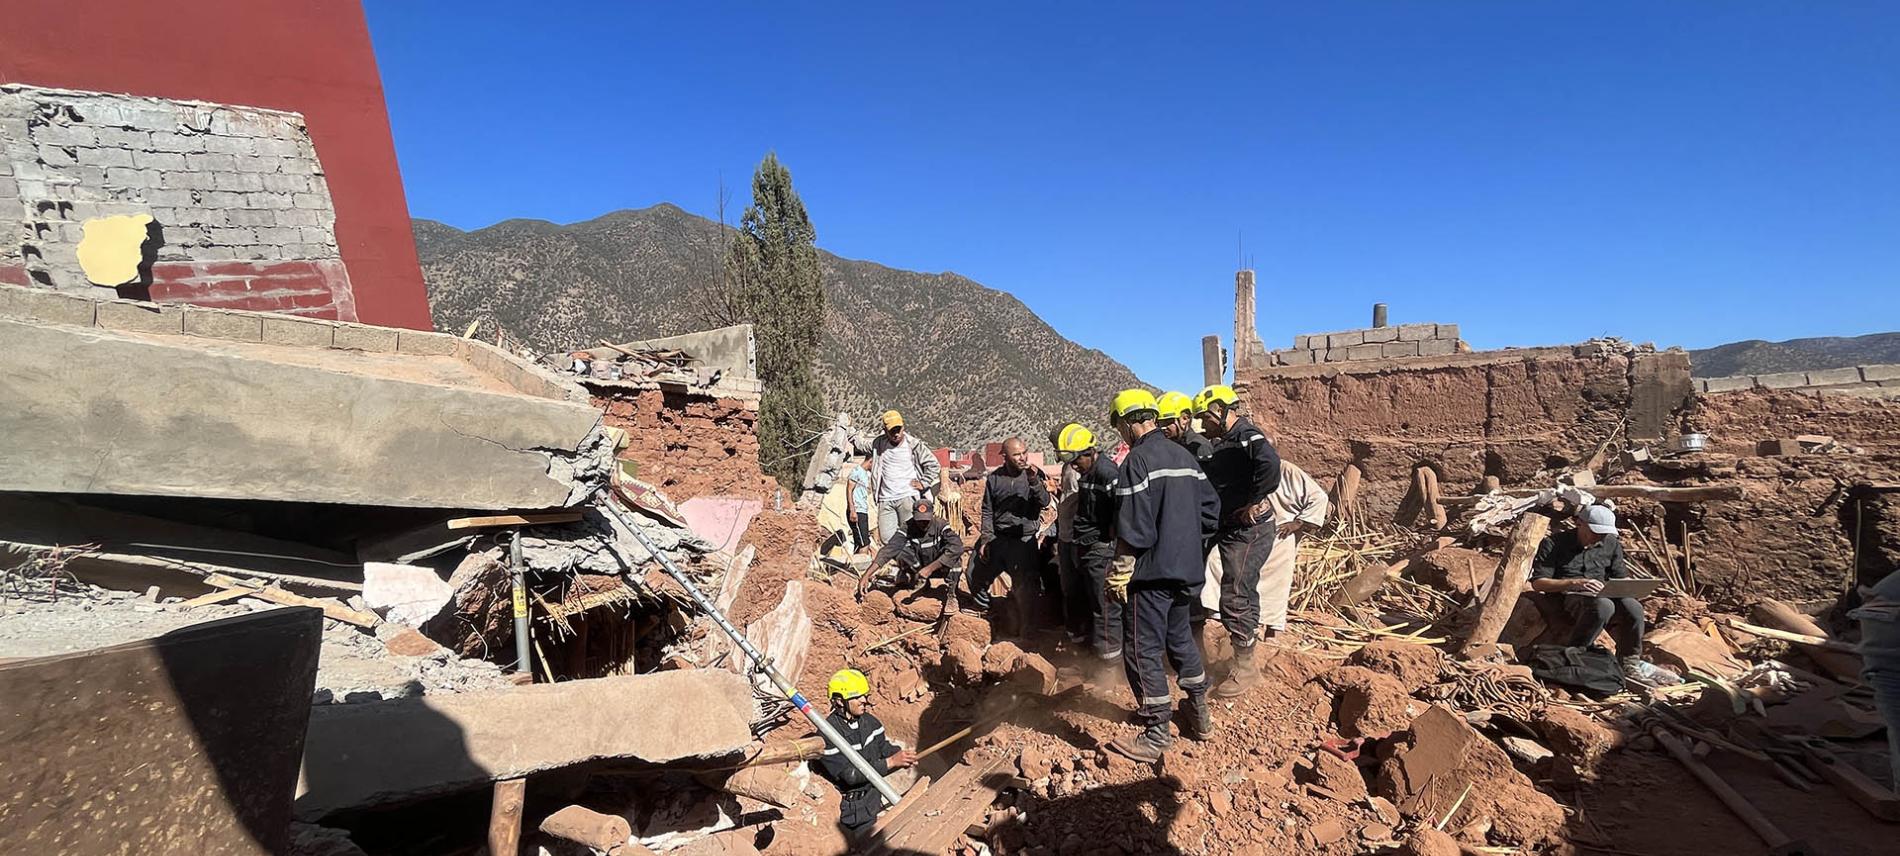 Bei dem Erdbeben wurden viele Häuser zerstört oder beschädigt. Die erste Priorität der Rettungsteams besteht darin, die Opfer aus den Trümmern zu befreien. Foto: Marc Ferra